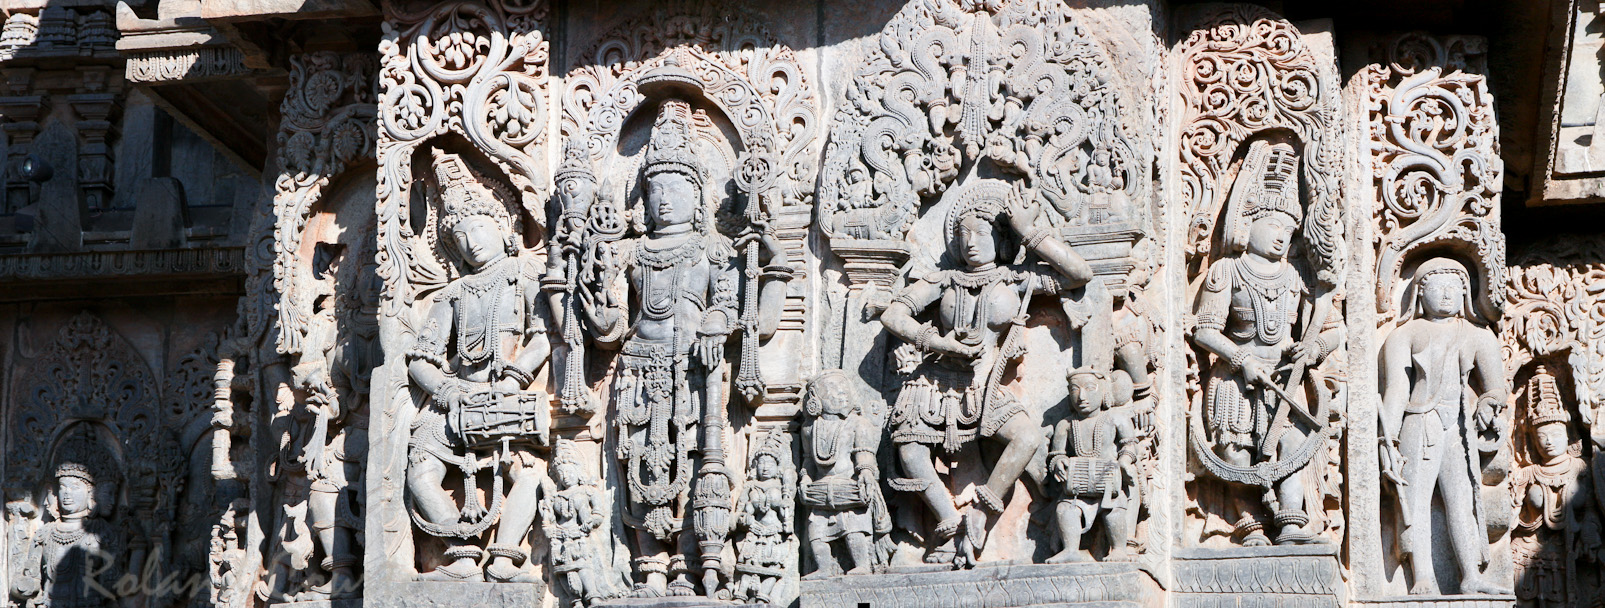 Halebid, temple de Hoysaleswara: à droite, l'une des premières représentations d'un étranger venu d'Europe.